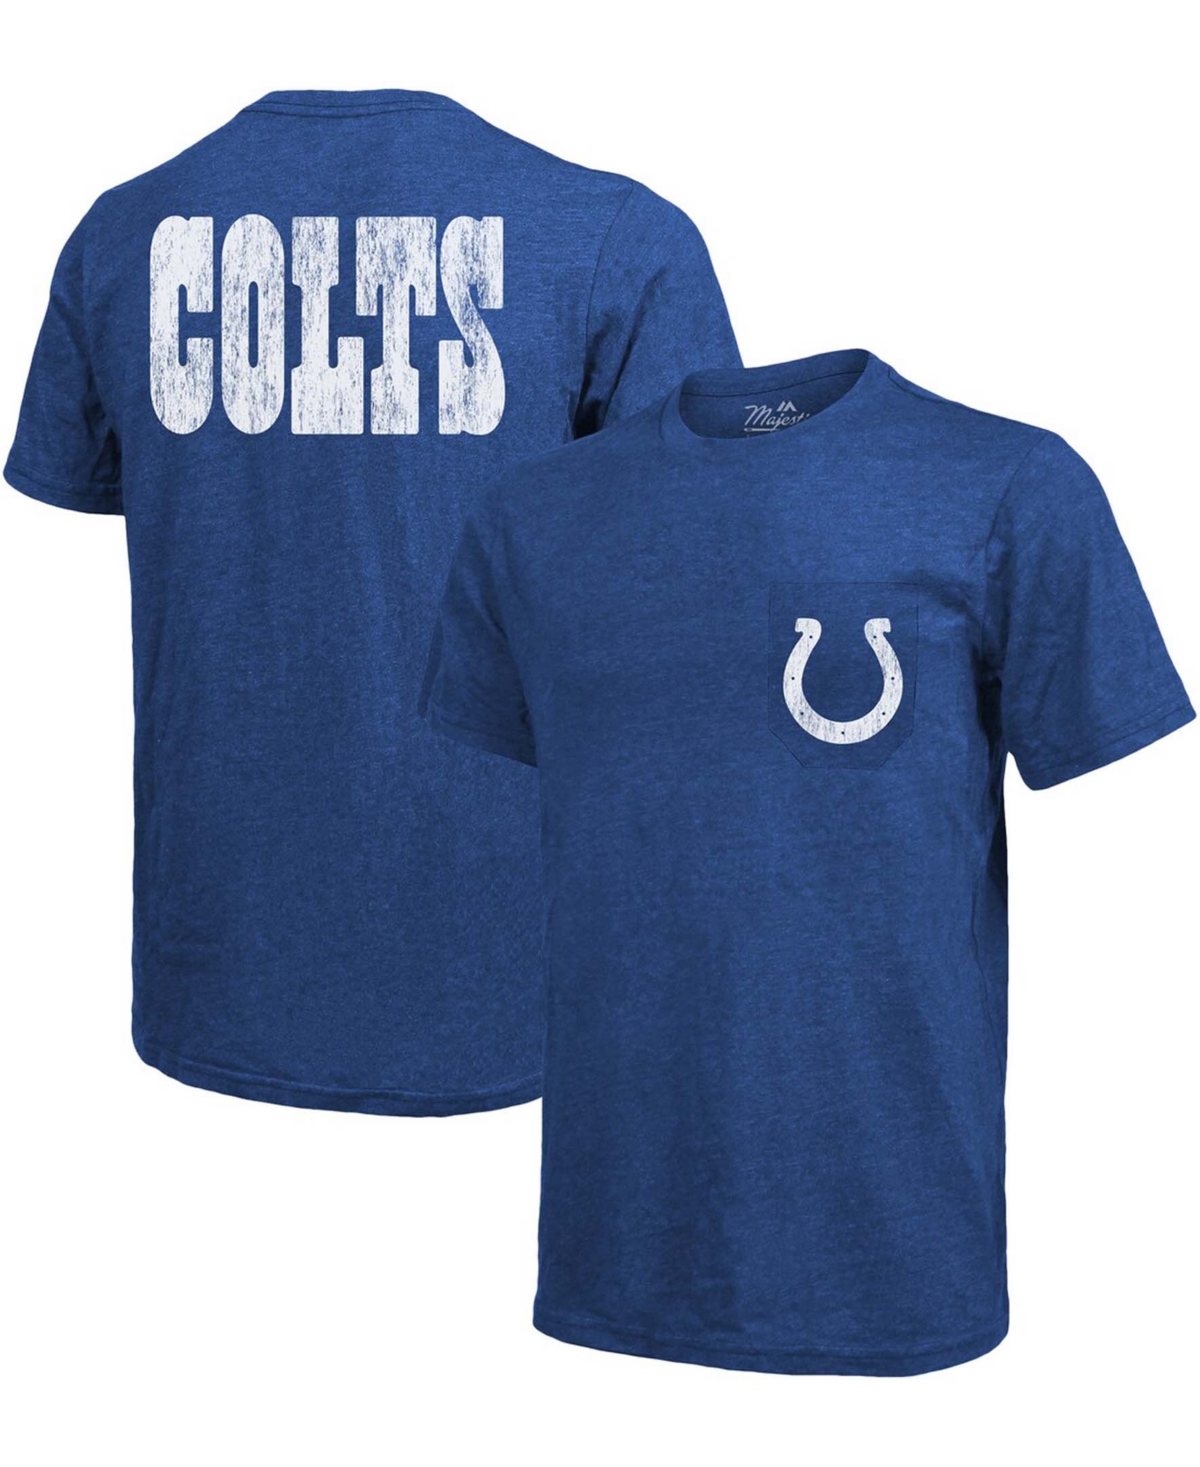 Indianapolis Colts Tri-Blend Pocket T-shirt - Heathered Royal - Royal Blue